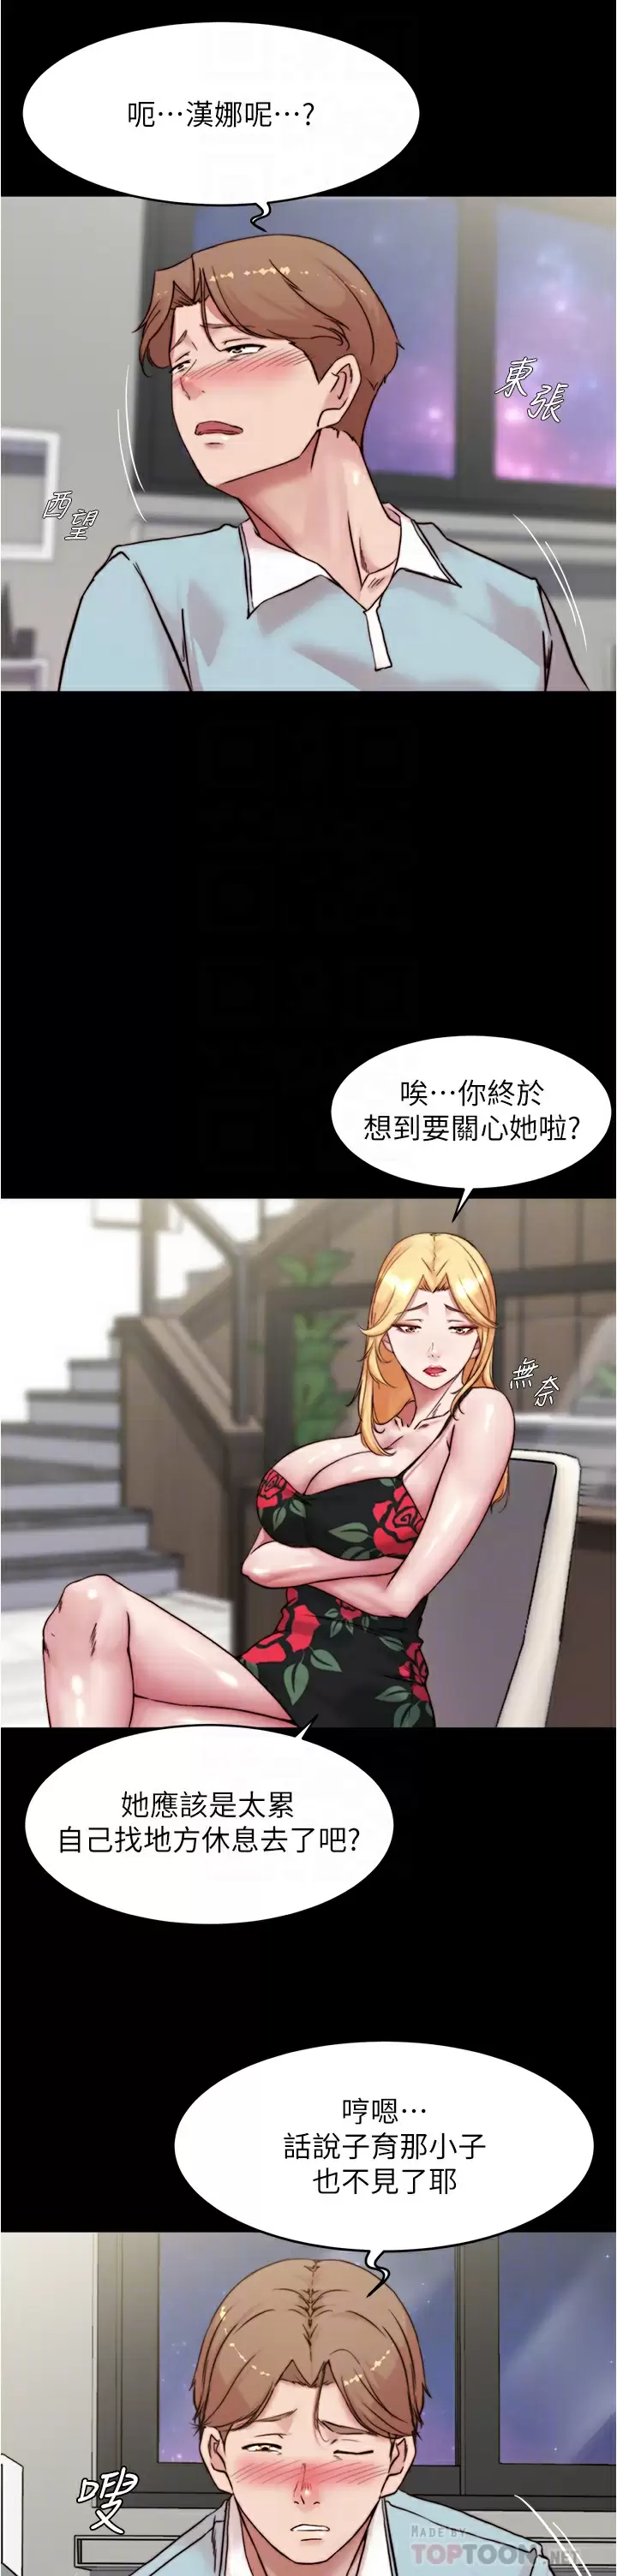 韩国污漫画 小褲褲筆記 第94话 老公给不了的刺激性爱 18